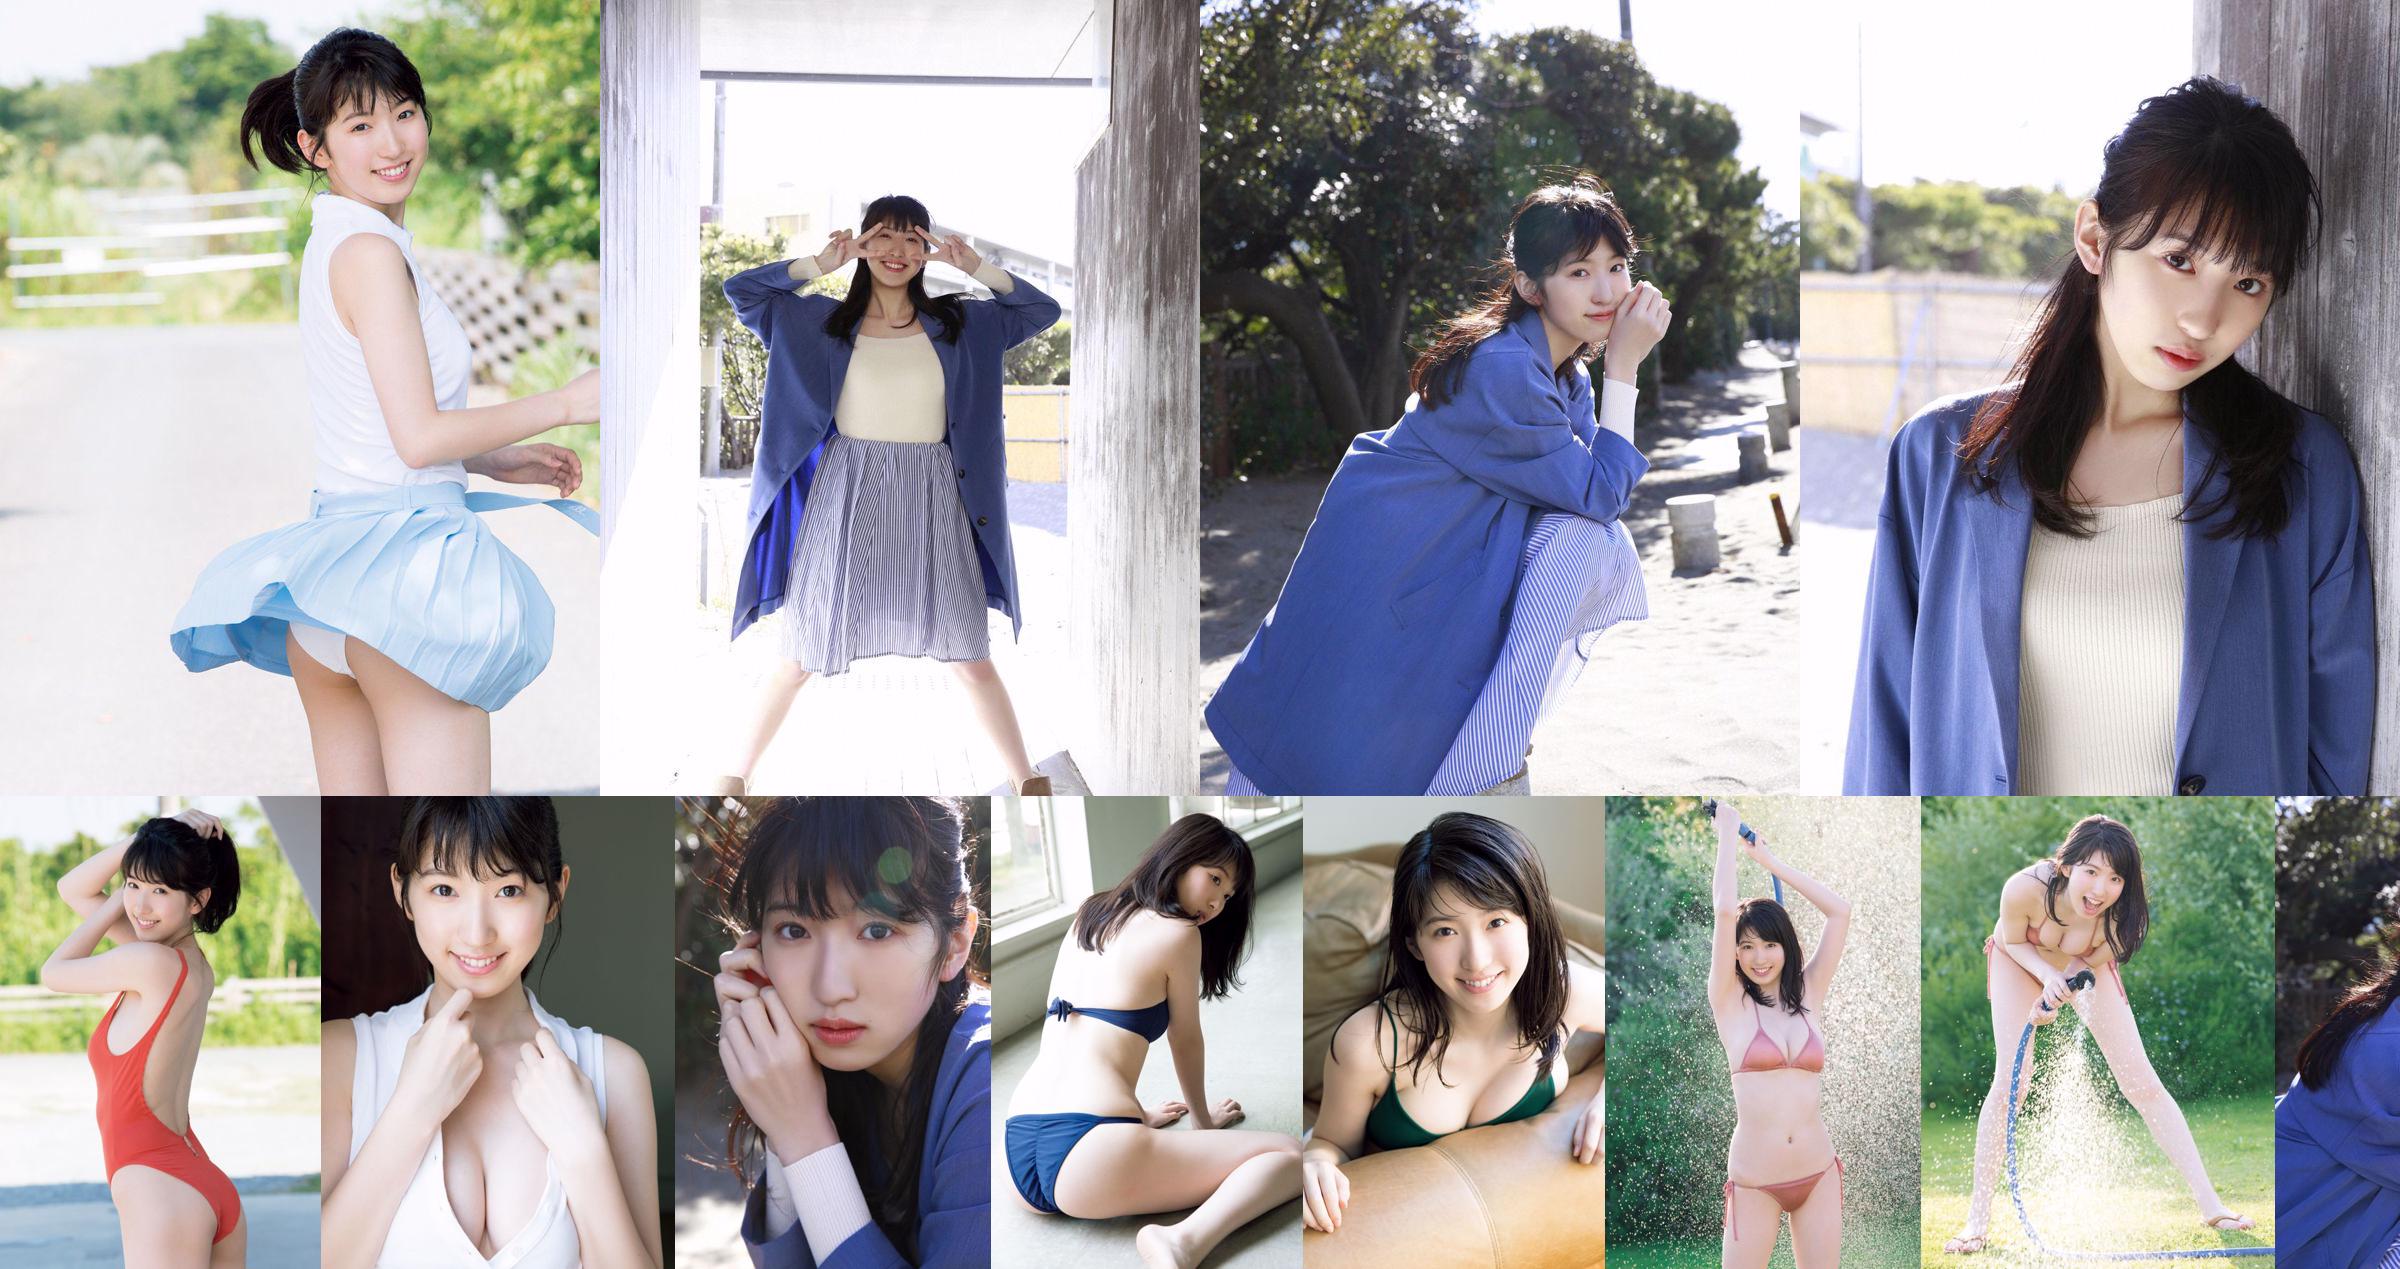 [THỨ SÁU] 《Shuka Saito, 22 tuổi, cô gái 22 tuổi, độc quyền cho ra mắt bộ áo tắm độc quyền về hình ảnh đáng quý của một diễn viên lồng tiếng cho vụ nổ lớn nổi tiếng》 Ảnh No.d77e4d Trang 4